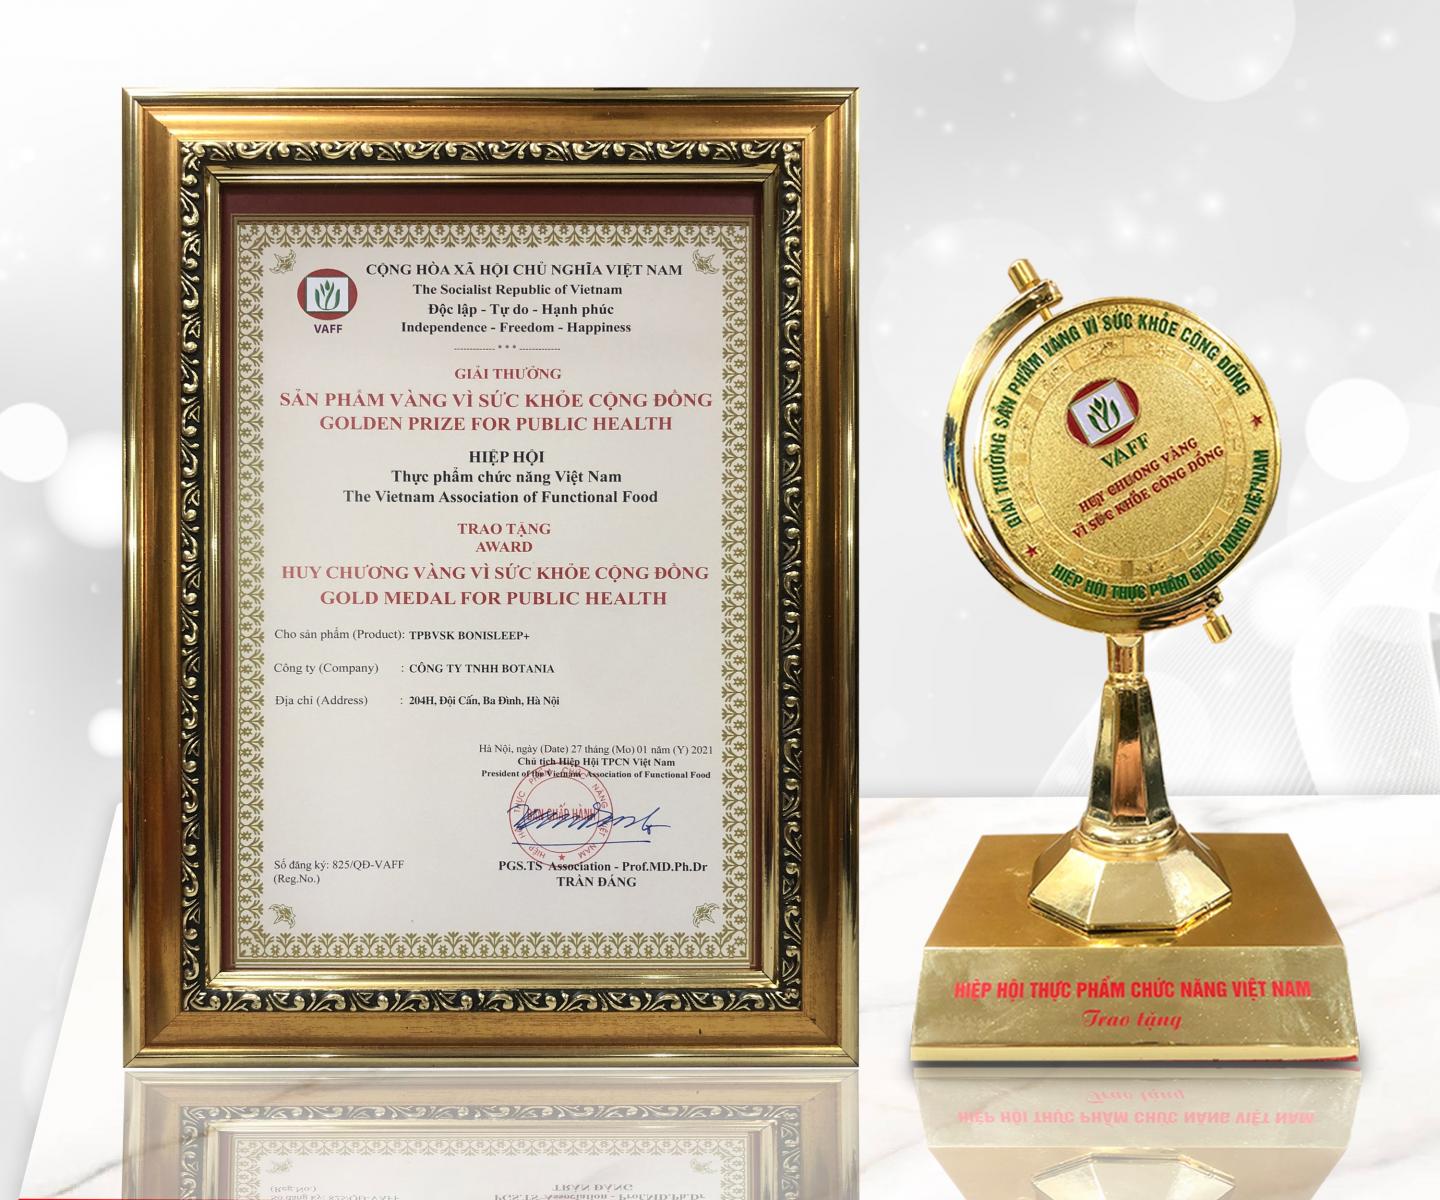 BoniSleep + được trao tặng danh hiệu “Huy chương vàng vì sức khỏe cộng đồng”